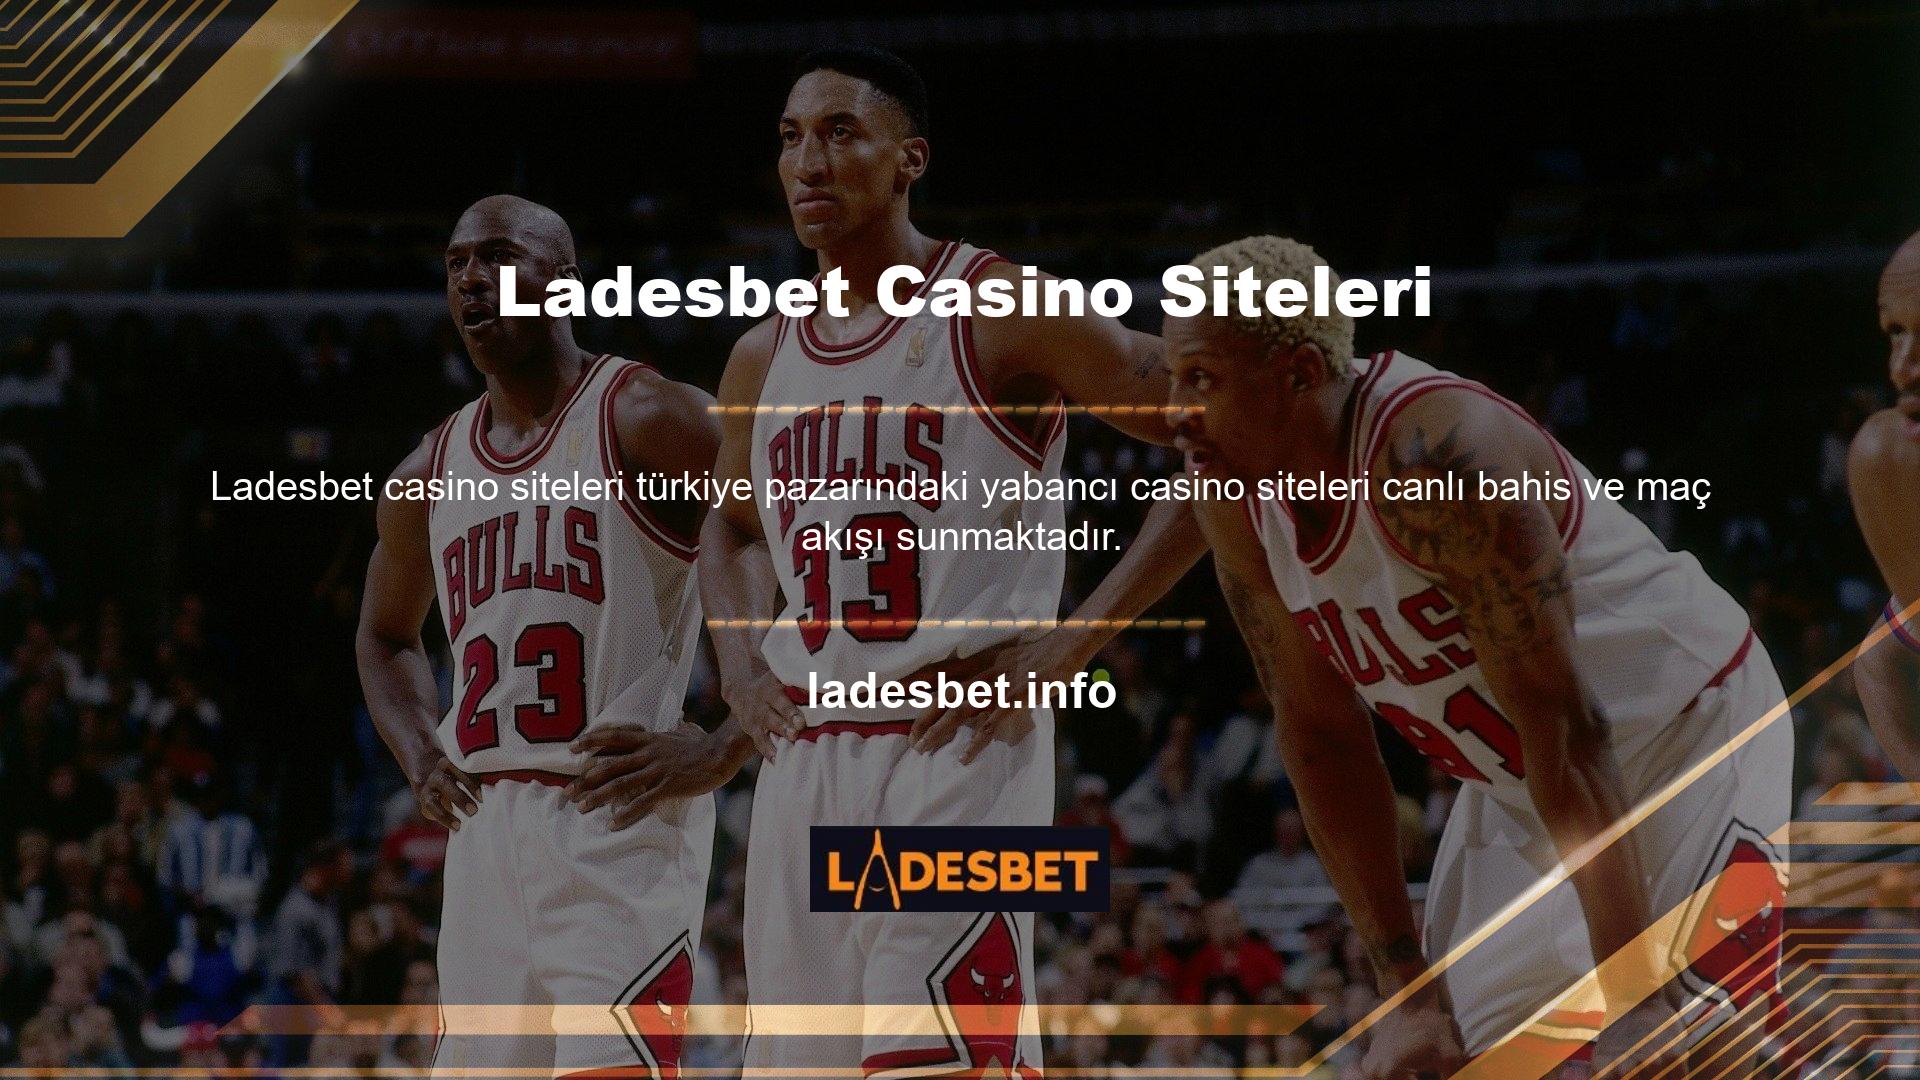 Ladesbet TV Bahis Sitesi herkesin bu hizmetlerden faydalanabilmesi için canlı maç yayınları düzenleyen ücretsiz bir hizmet platformudur